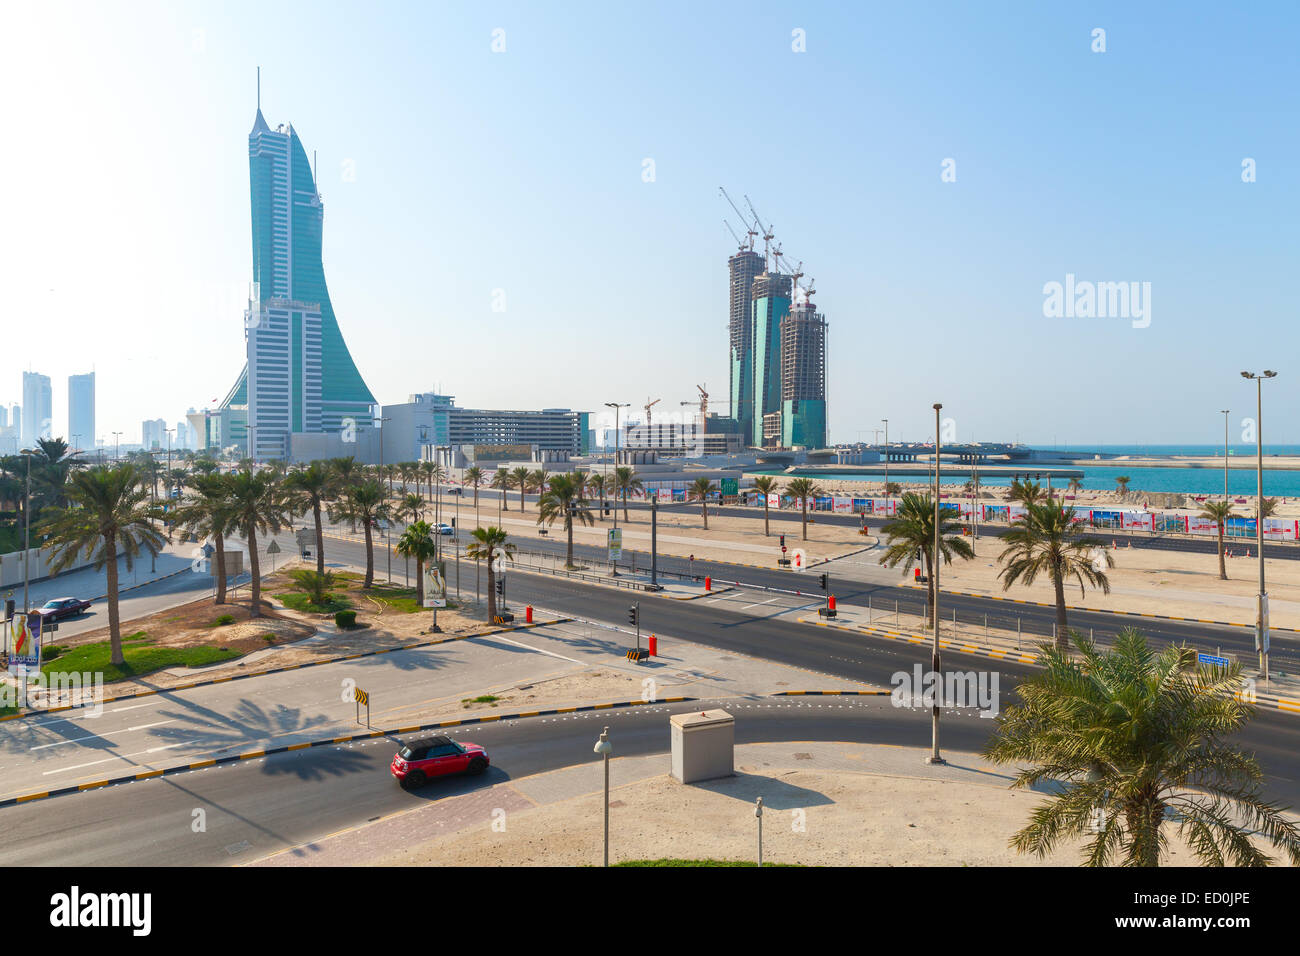 Manama, Bahrain - 21 Novembre 2014: grattacieli torri sono in costruzione nella città di Manama, la capitale del Bahrain. Medio Oriente Foto Stock